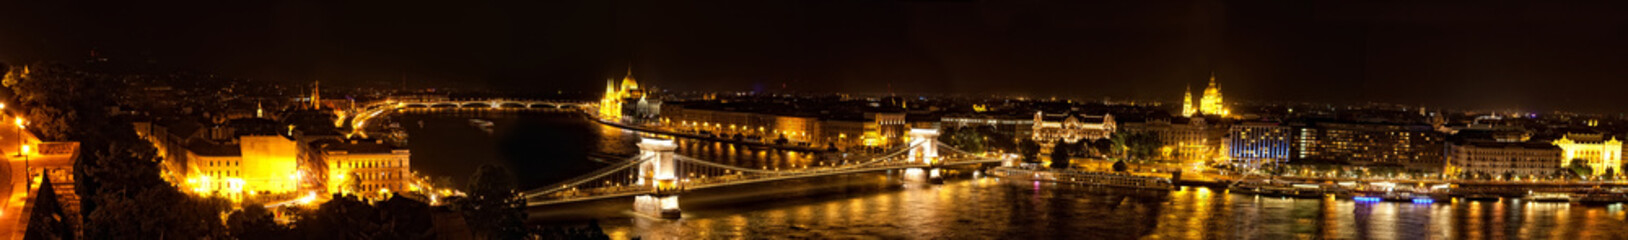 Fototapeta na wymiar Budapeszt - węgierski parlament i most łańcuchowy.